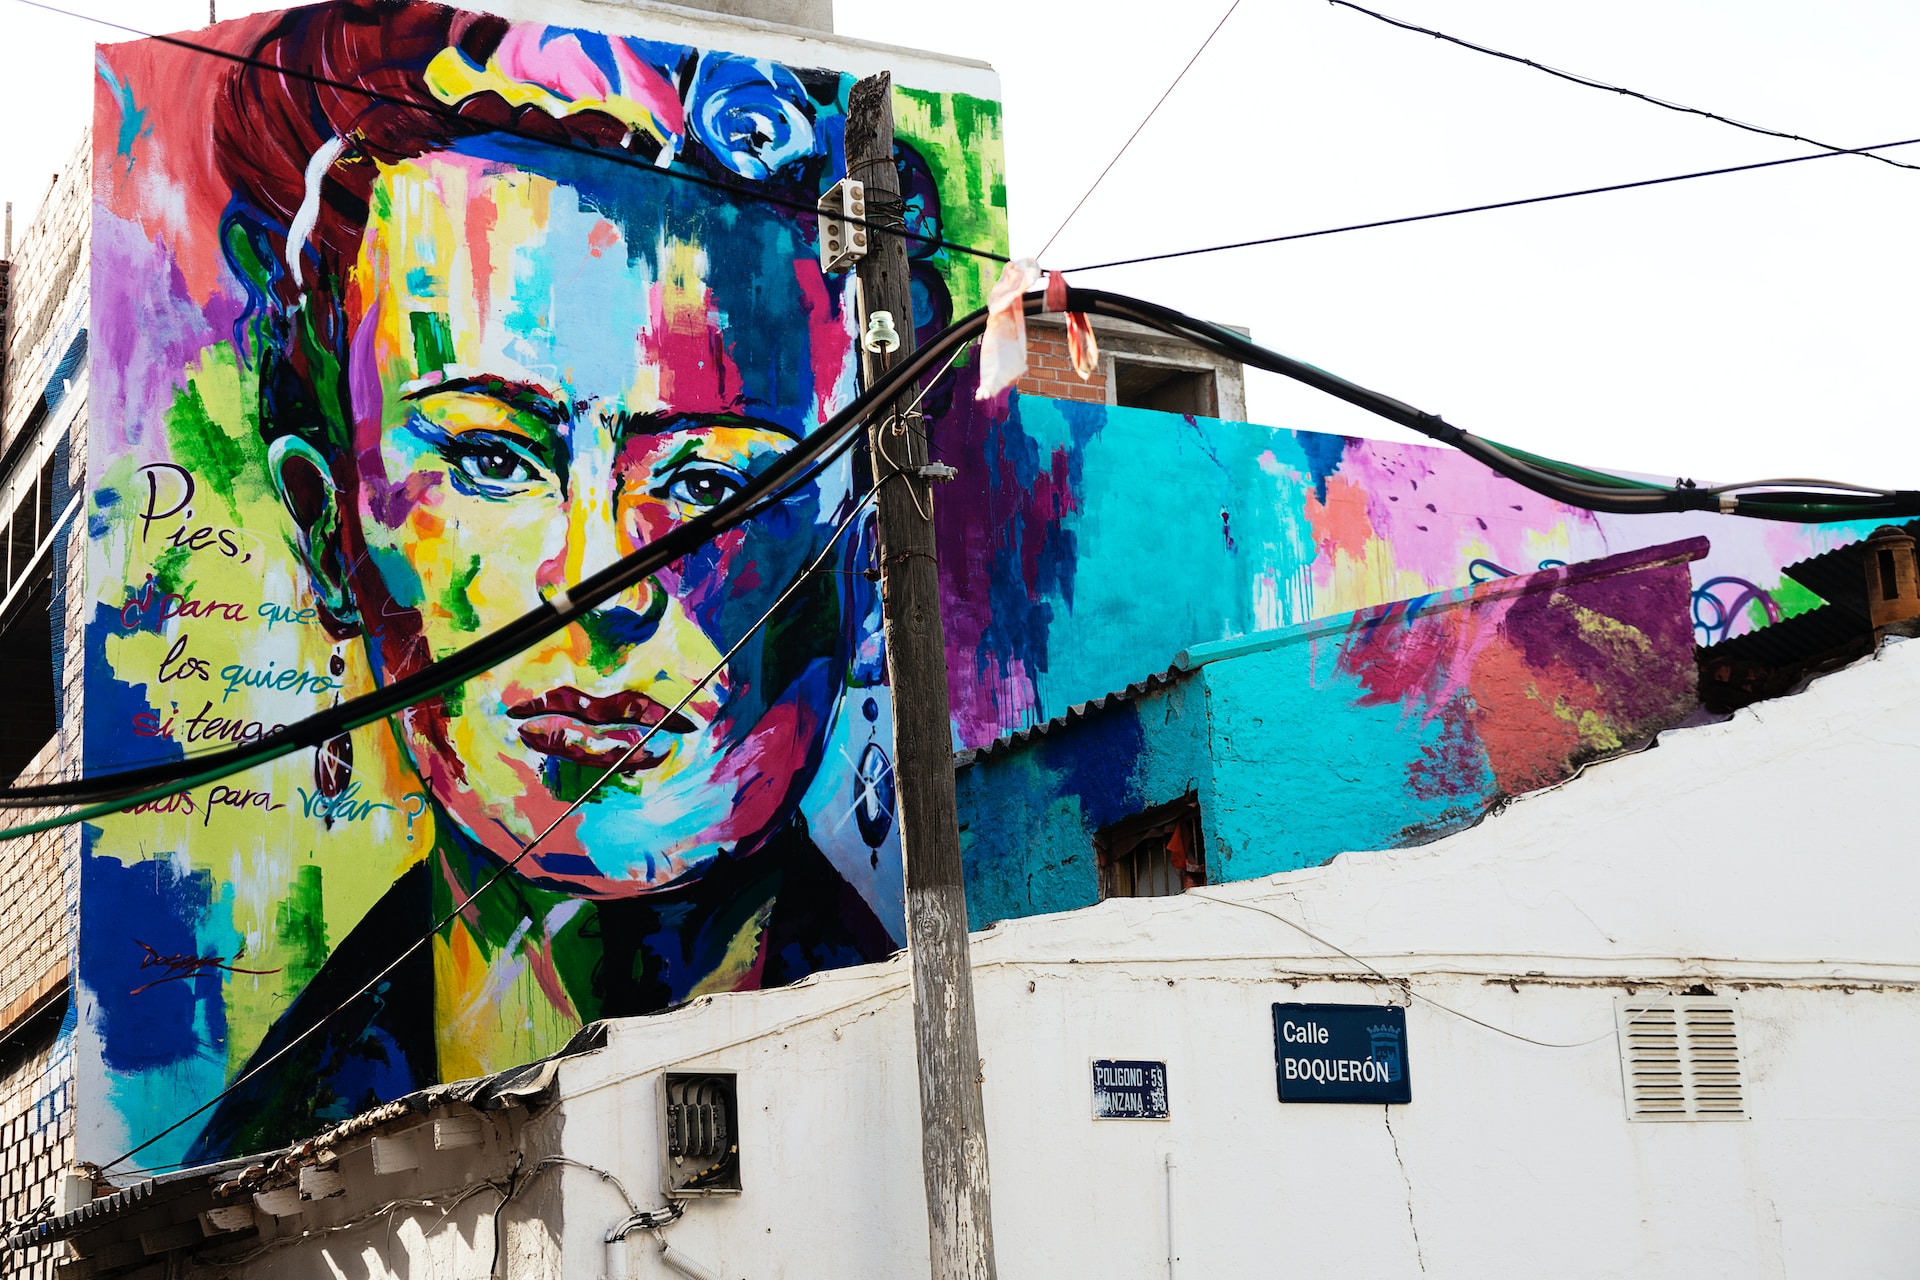 Mural of Frida Kahlo. Her quote reads, "“Pies para qué los quiero si tengo alas para volar”